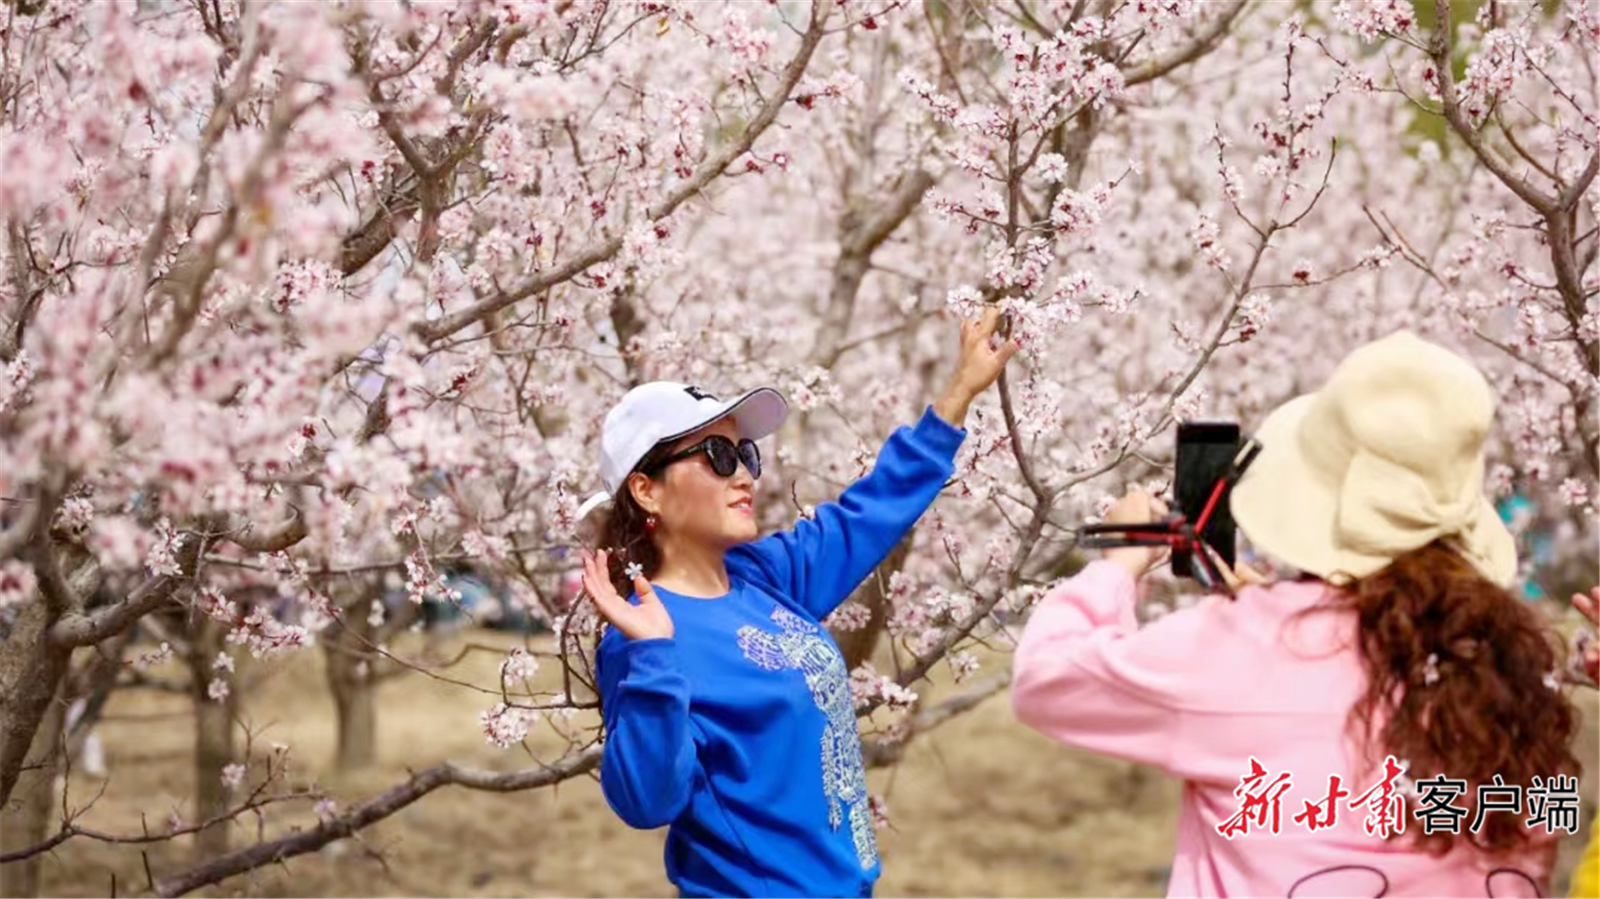 肃州区金佛寺镇万亩杏林迎来盛花期，吸引游客“打卡”拍照。